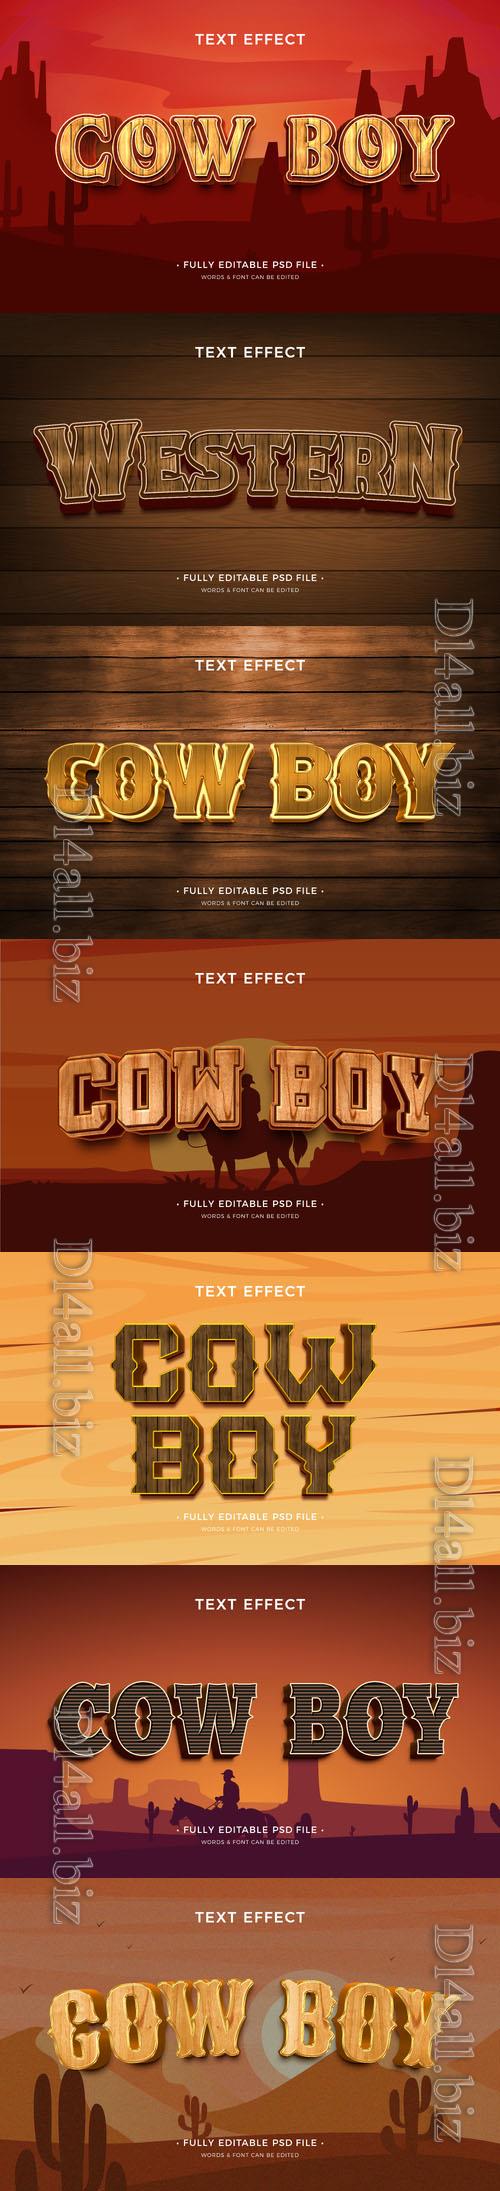 PSD cowboy text effect